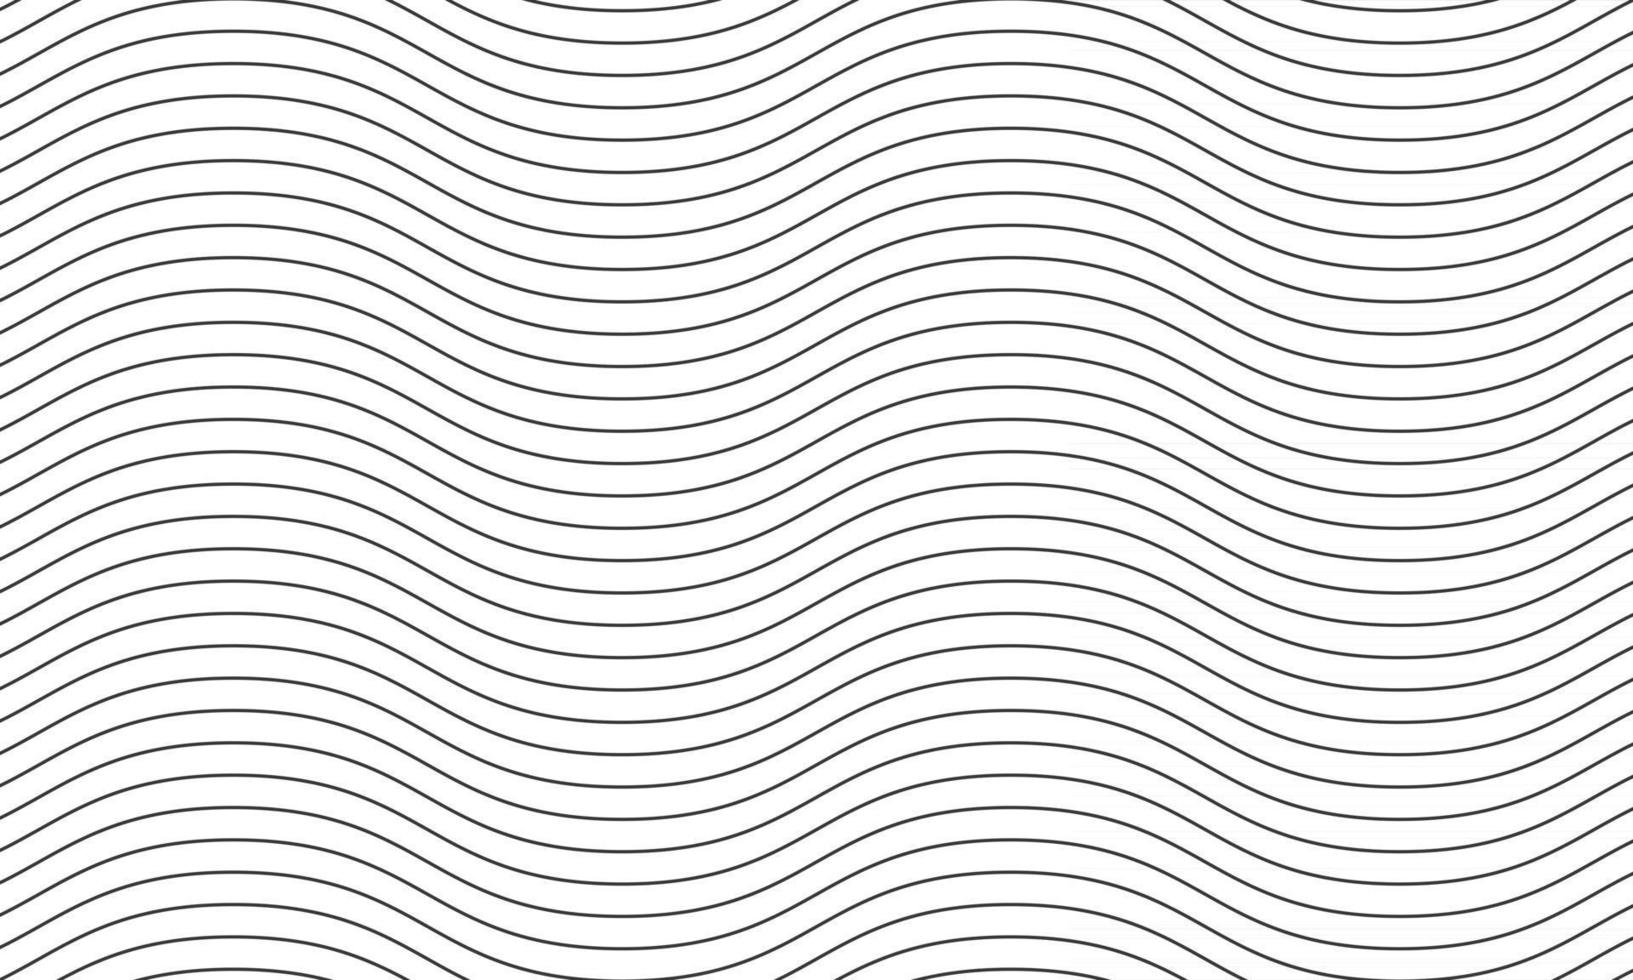 padrão abstrato de linhas suaves onduladas vetor